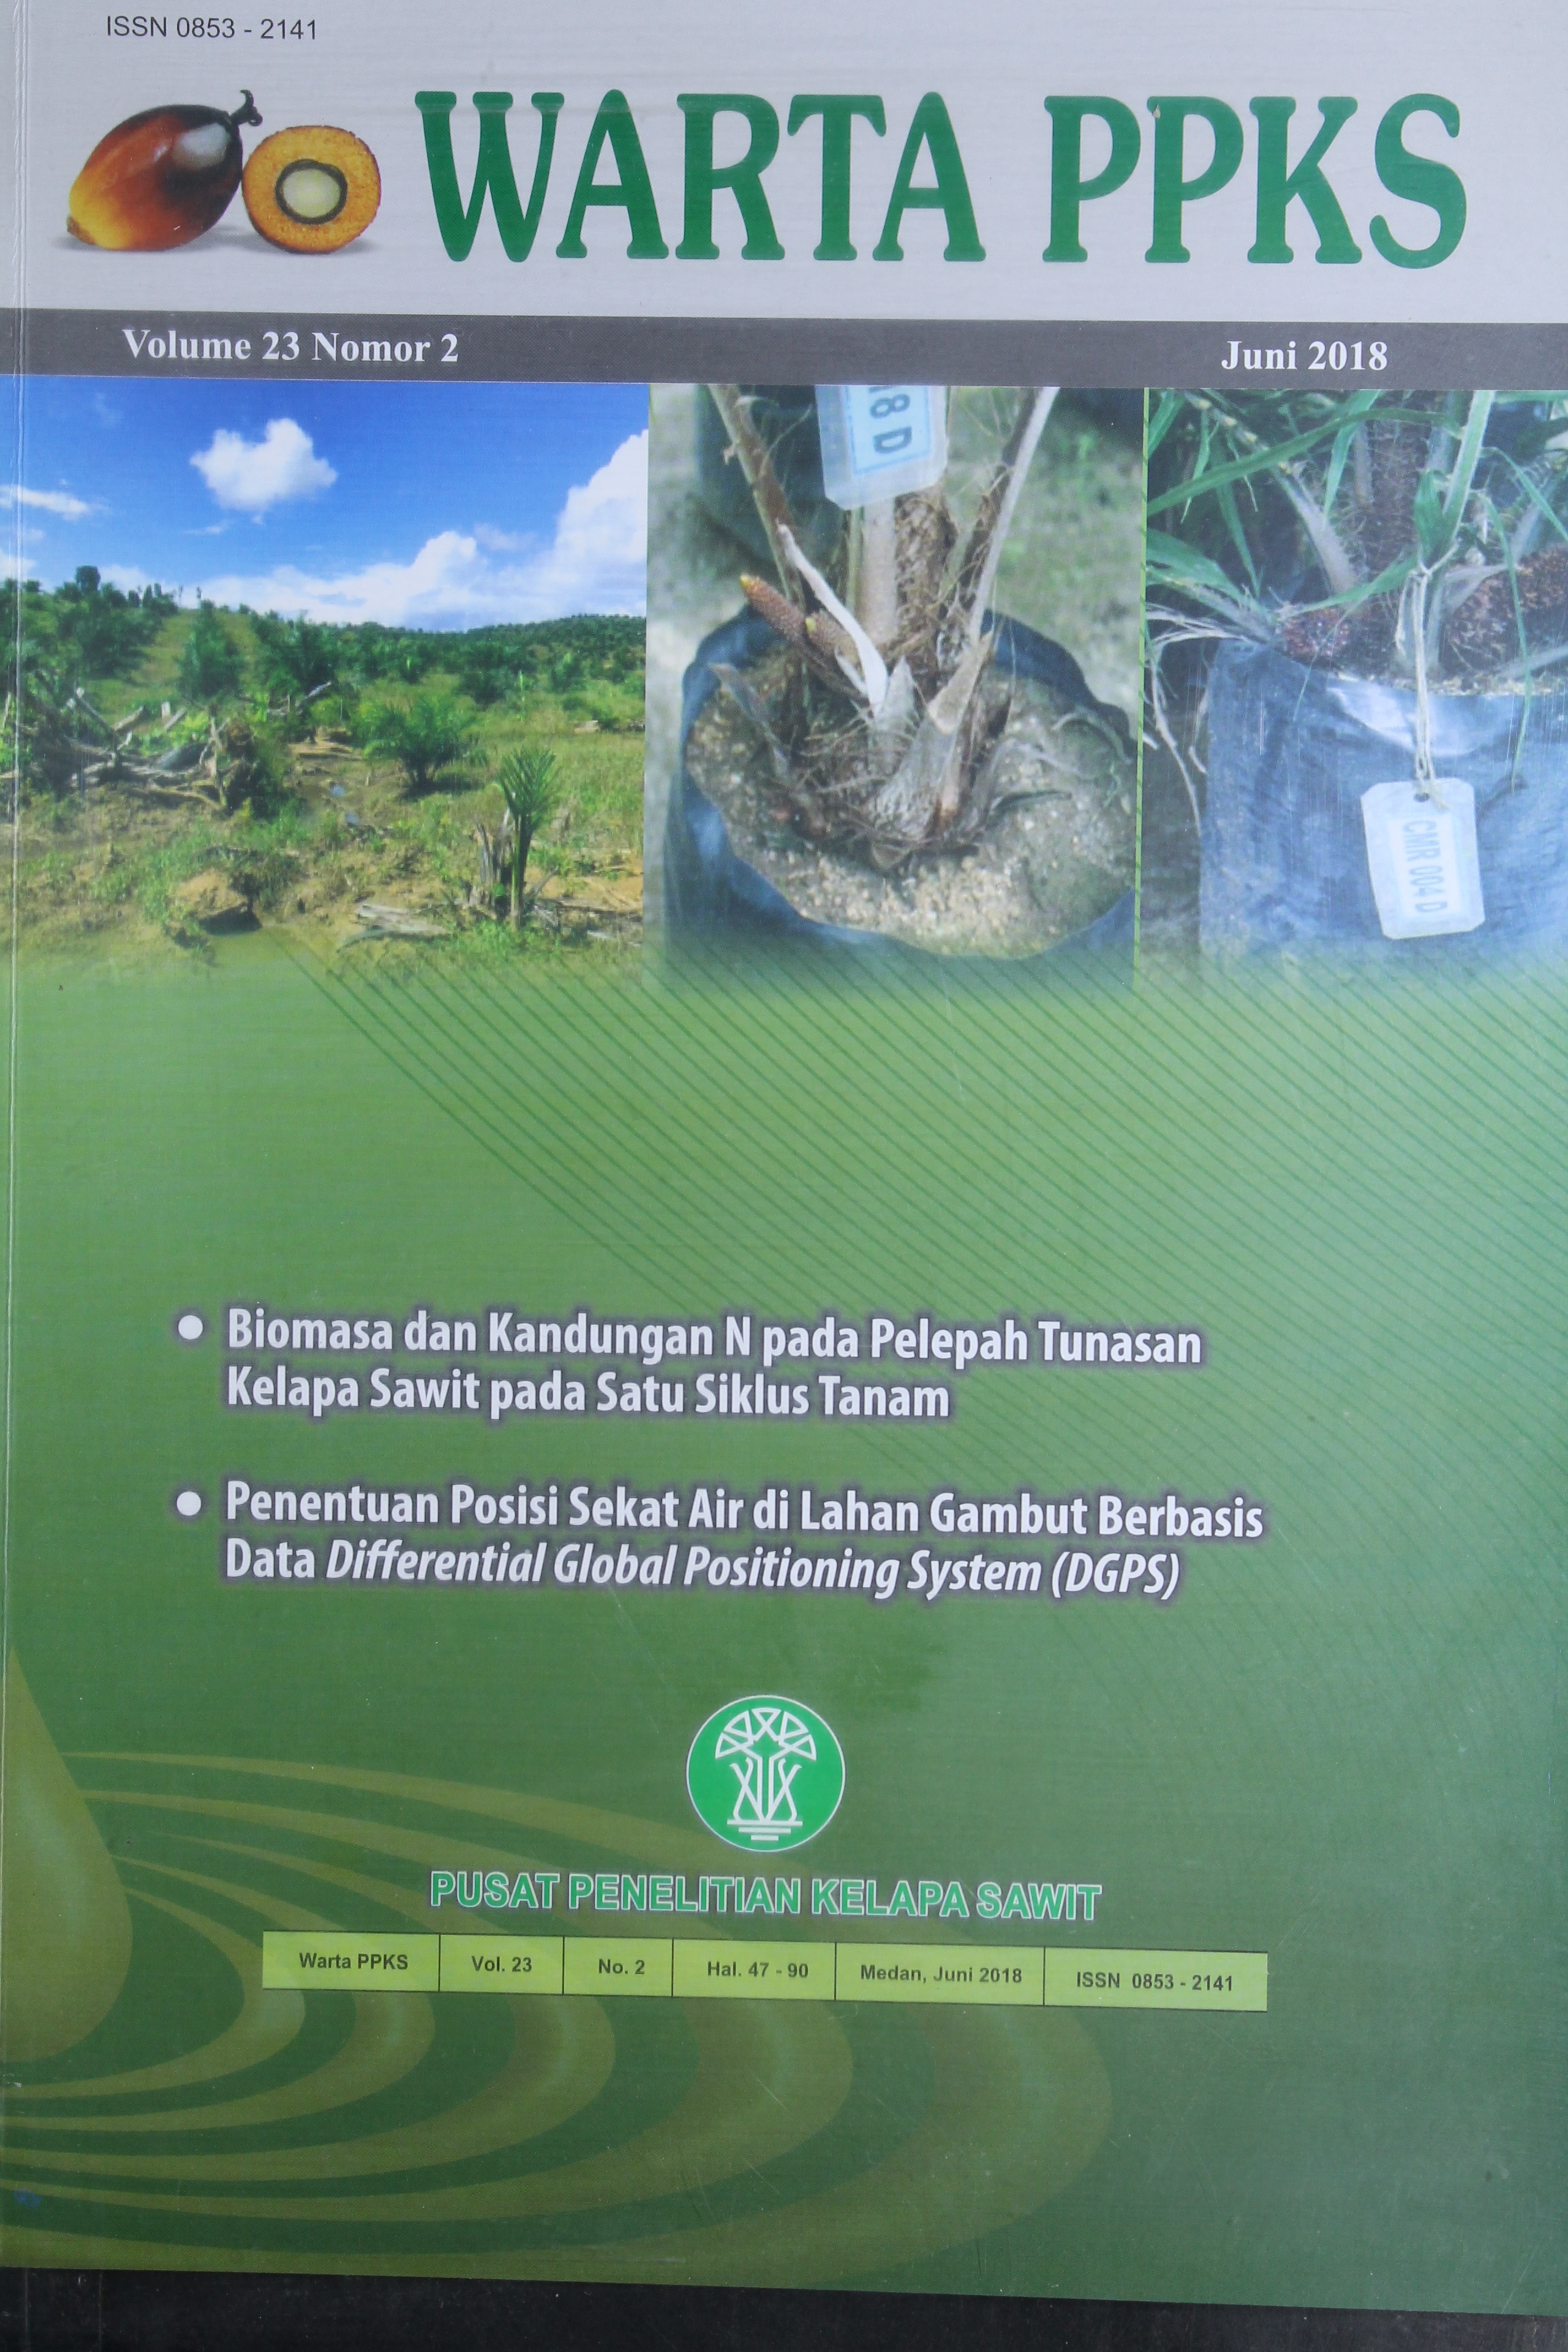 Biomasa dan Kandungan N Pada Pelepah Tunasan Kelapa Sawit Selama Satu Siklus Tanam